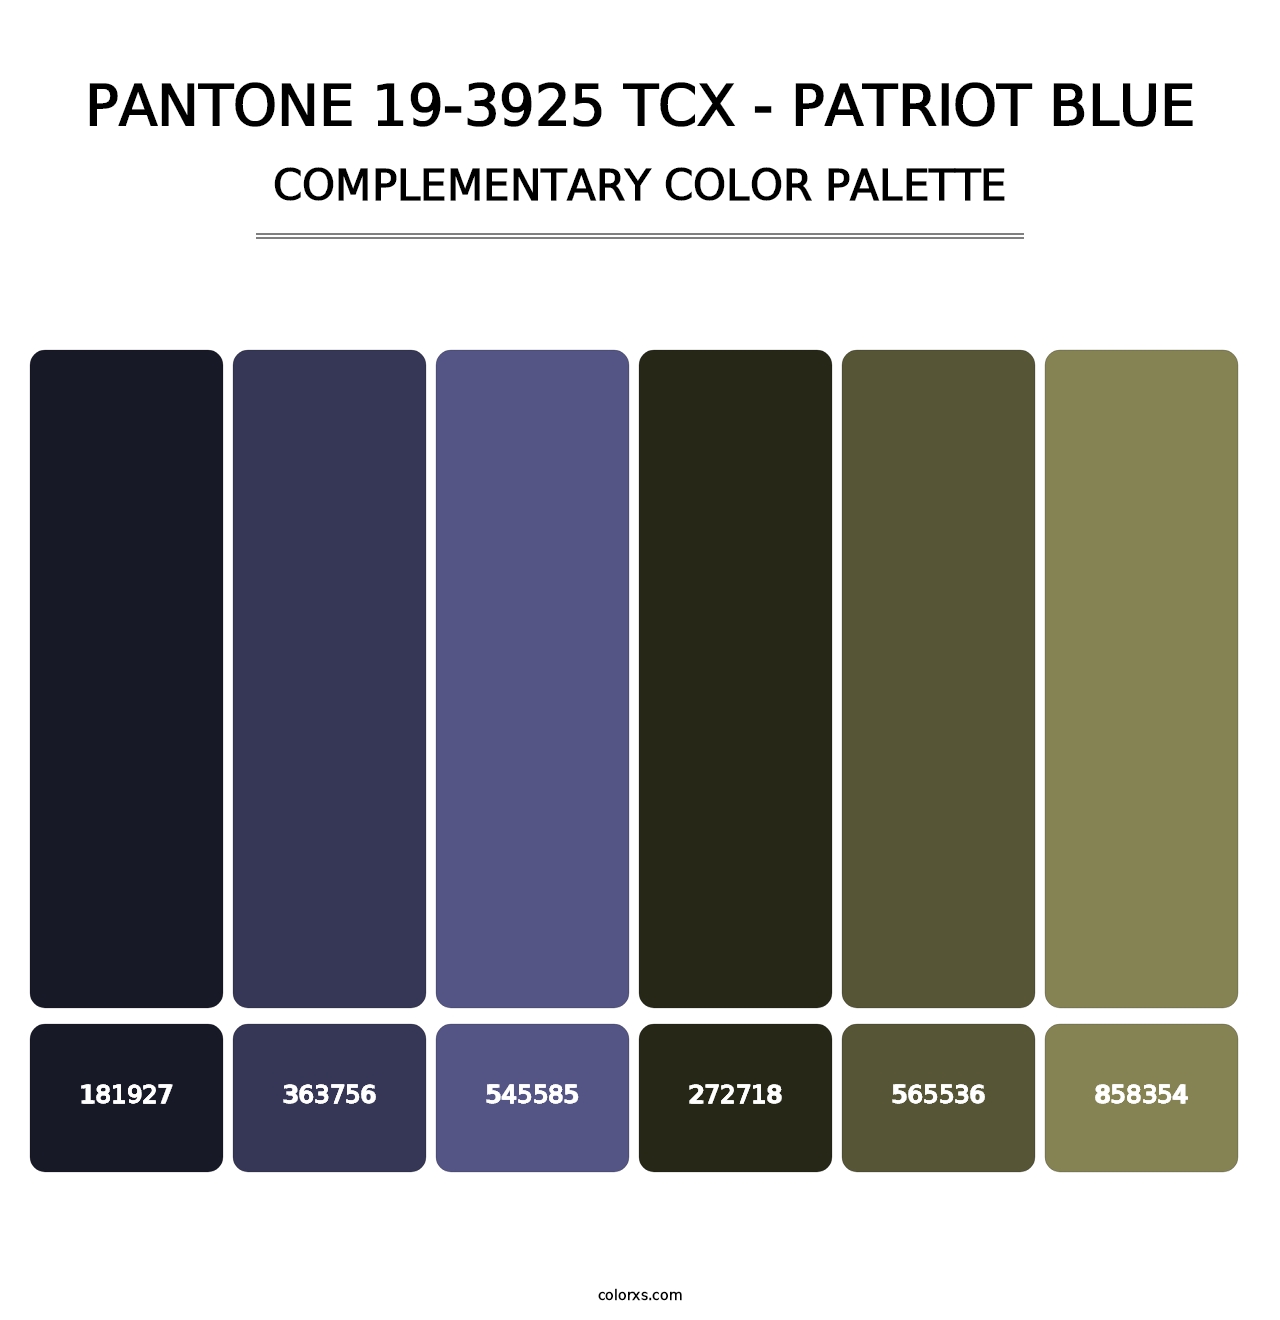 PANTONE 19-3925 TCX - Patriot Blue - Complementary Color Palette